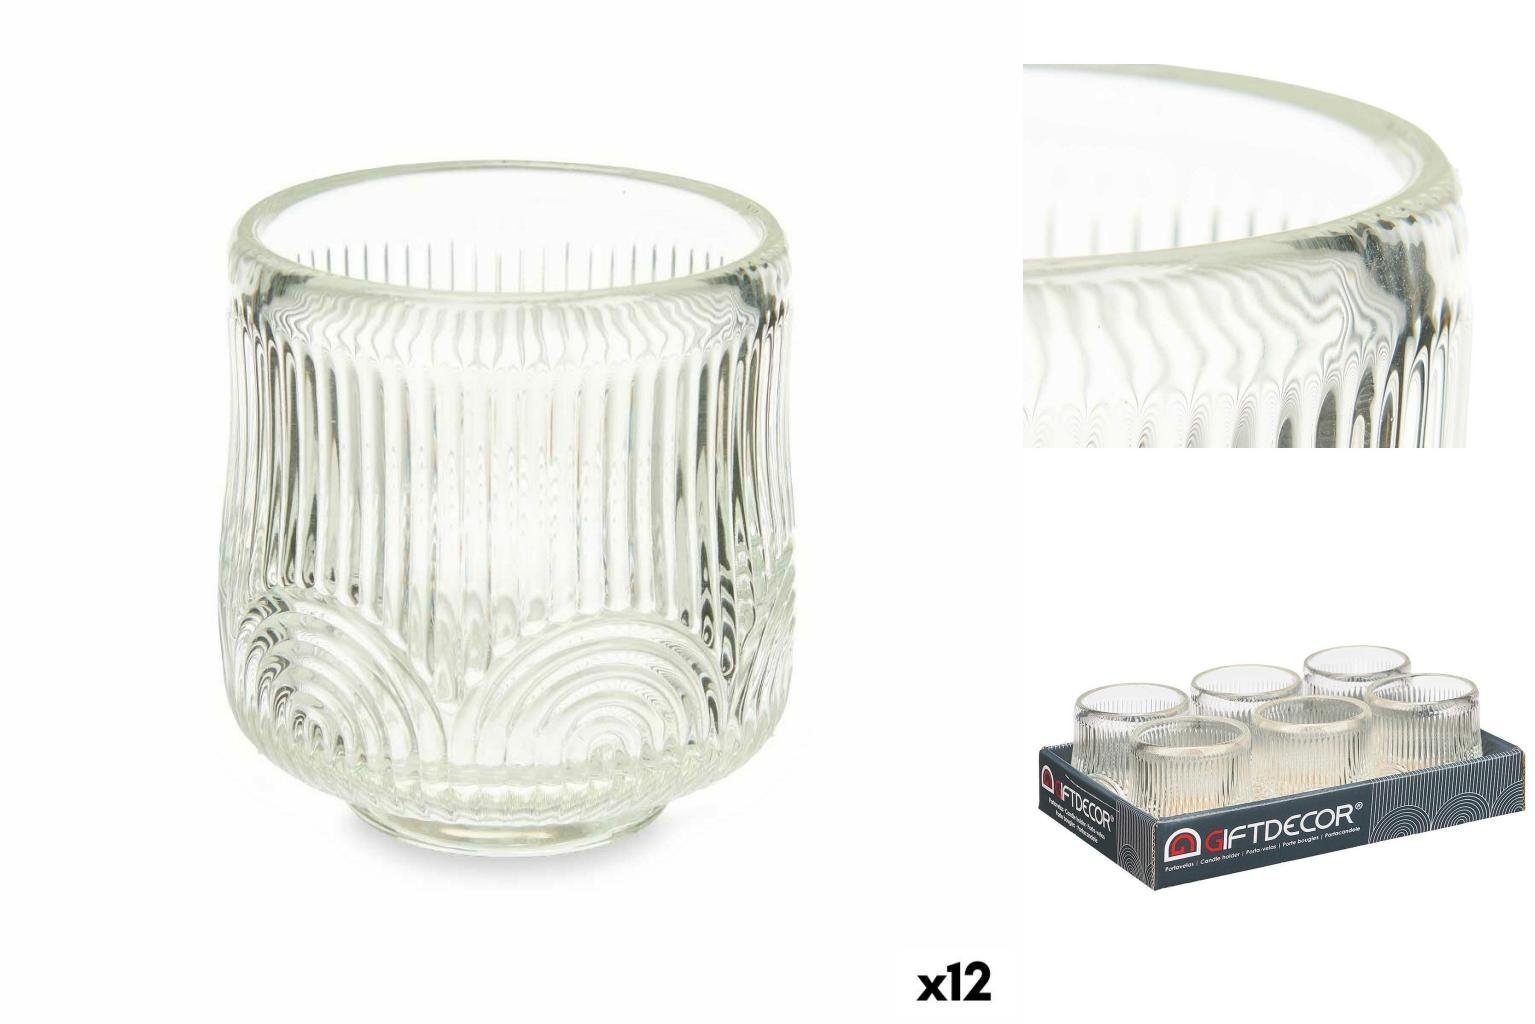 Gift Decor Windlicht Kerzenschale Streifen Durchsichtig Glas 7,5 x 7,8 x 7,5 cm 12 Stück